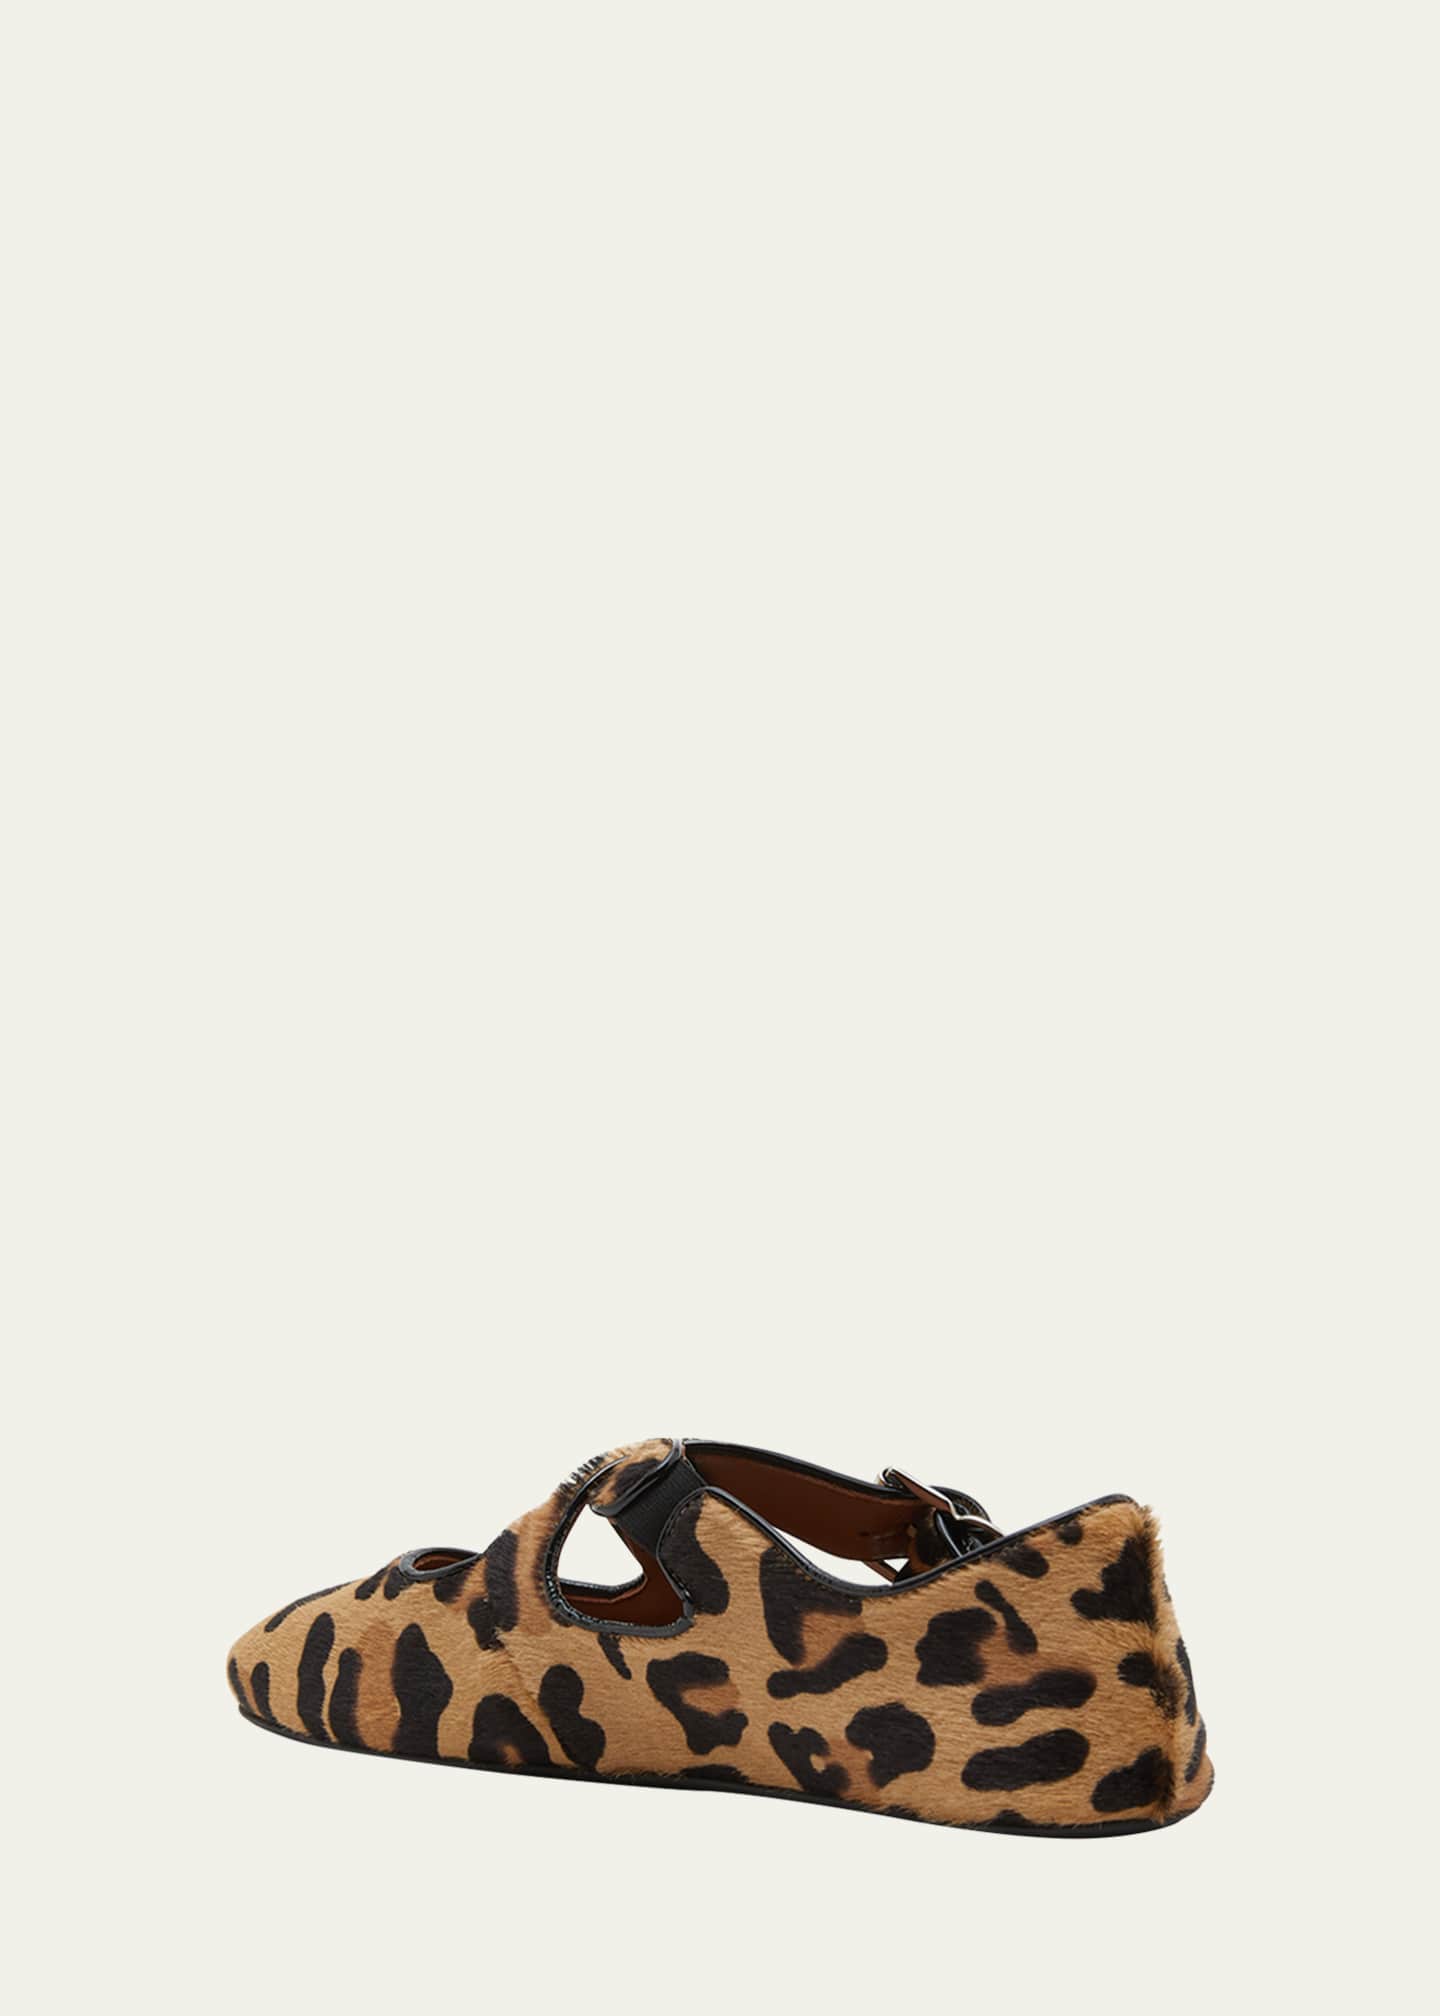 ALAIA Leopard Crisscross Ballerina Flats - Bergdorf Goodman